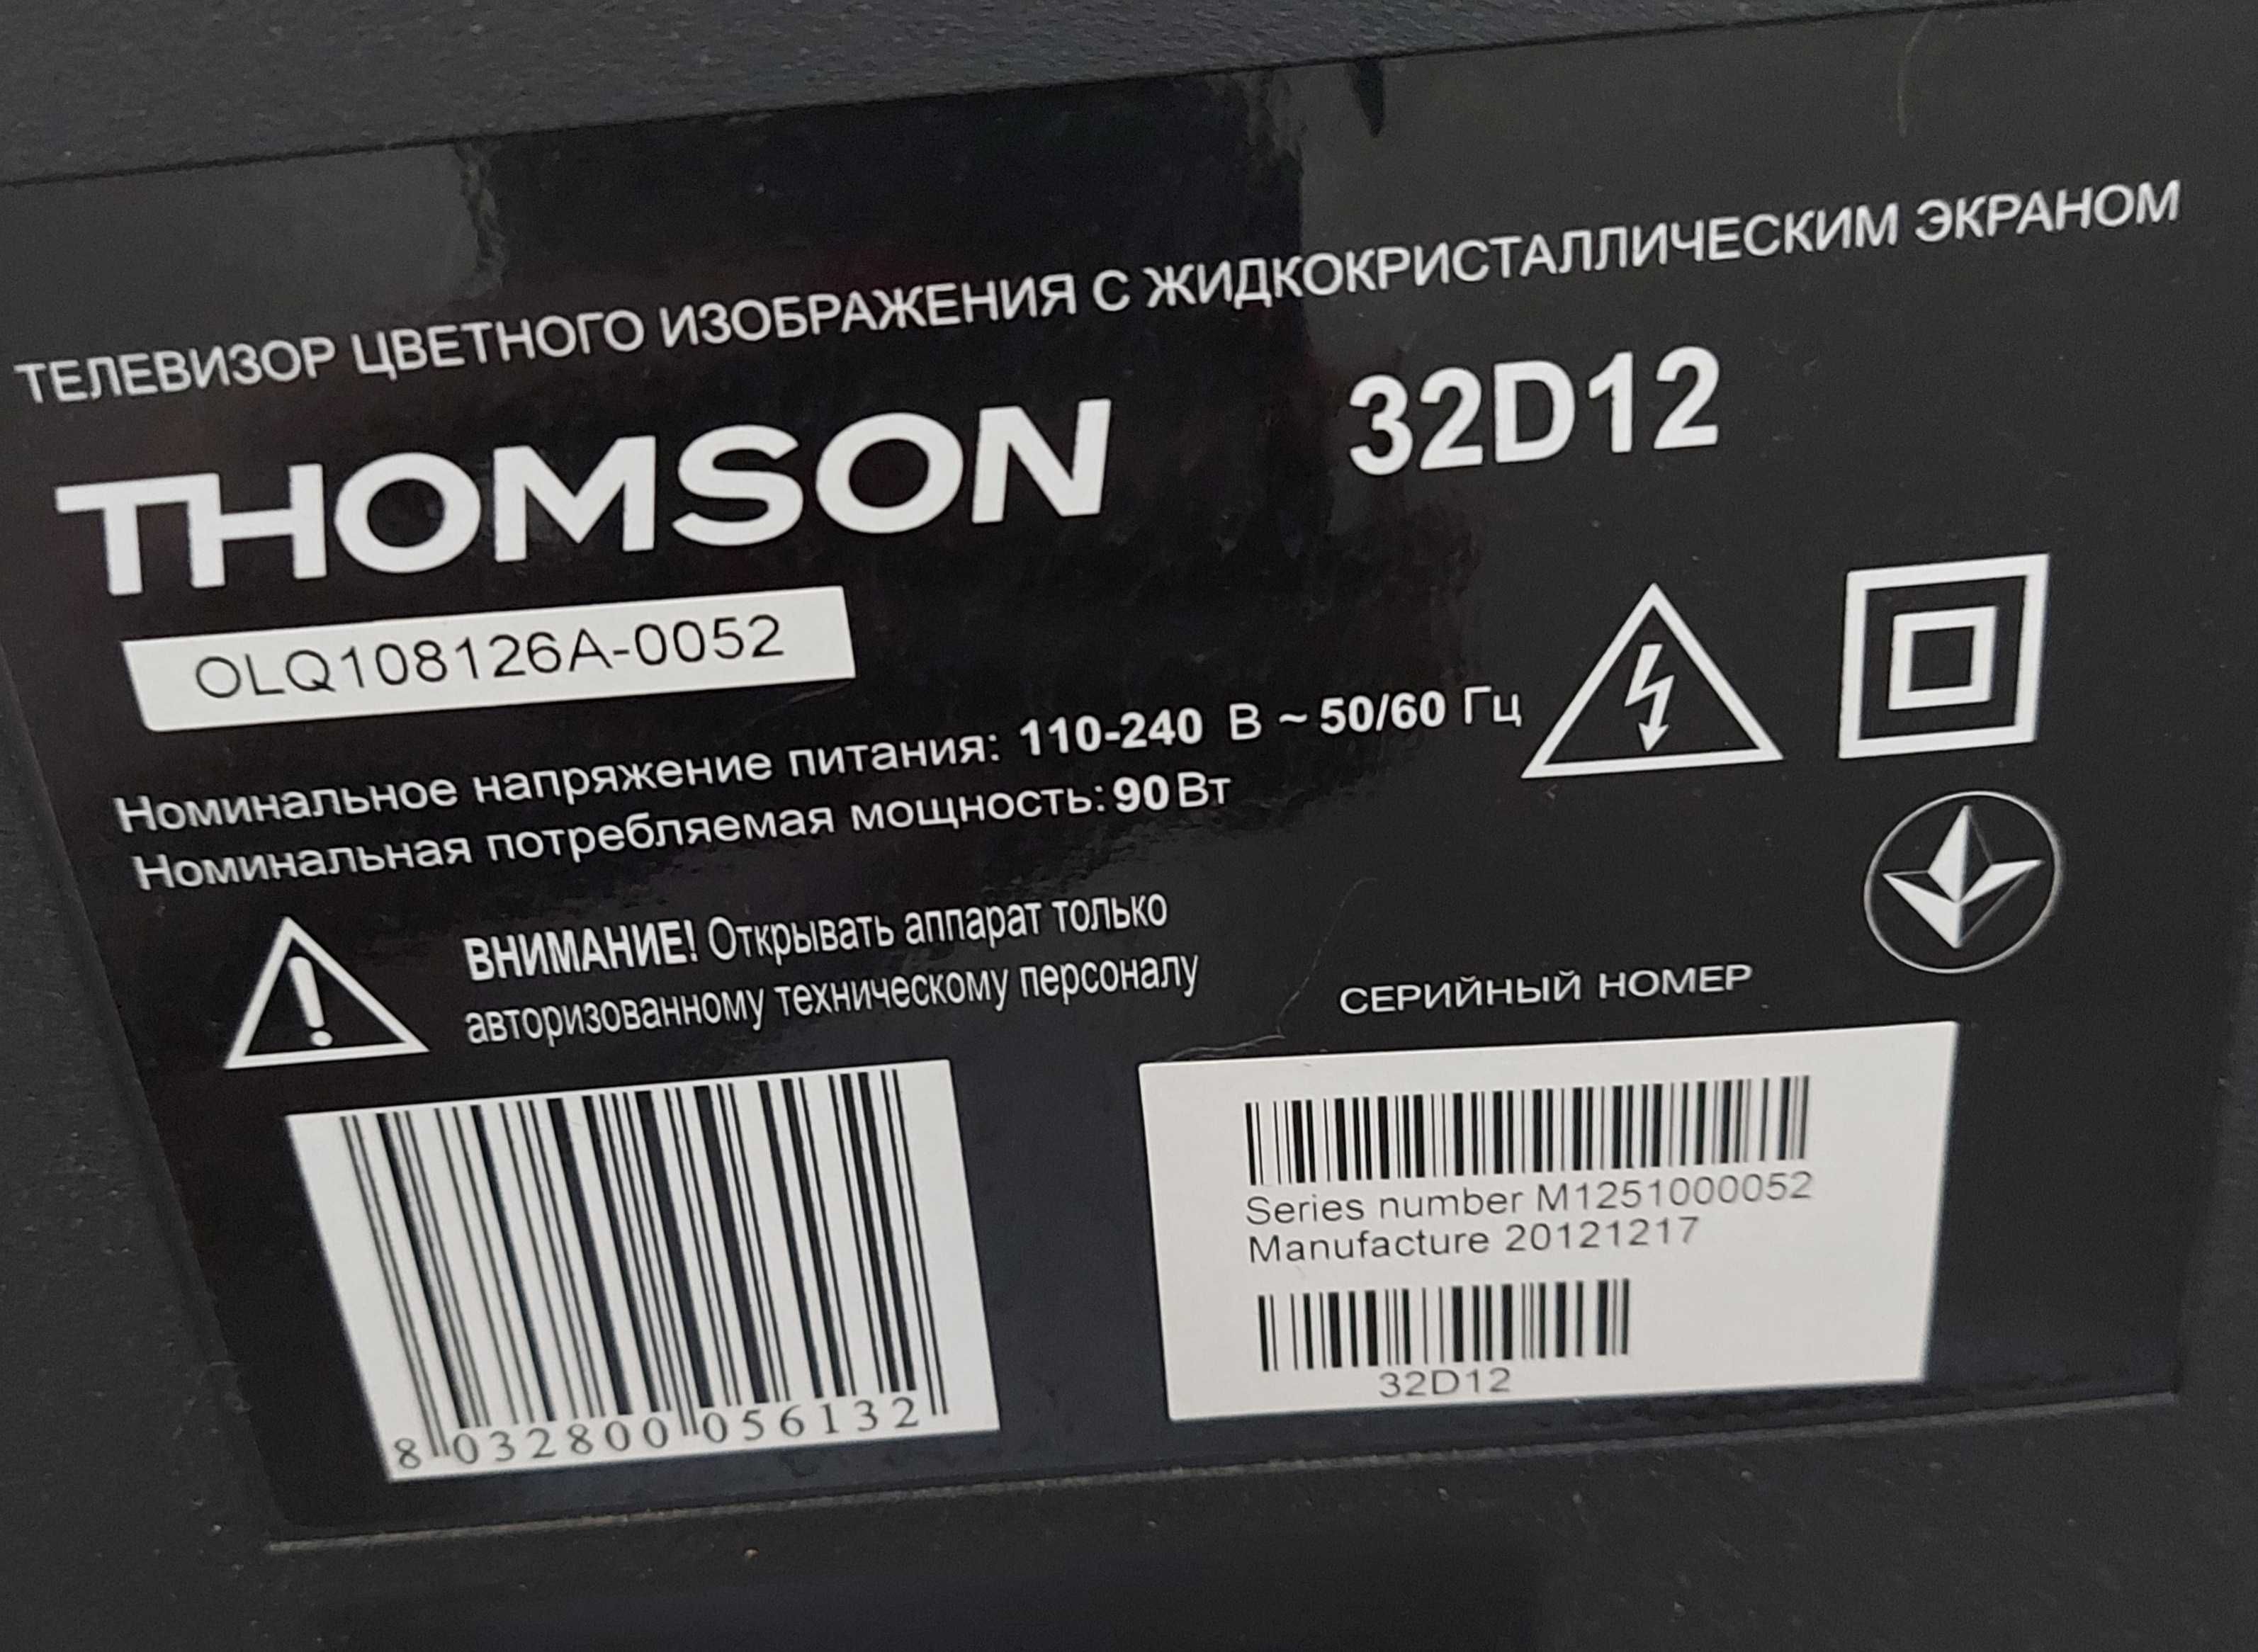 LED телевизор Thomson 32D12